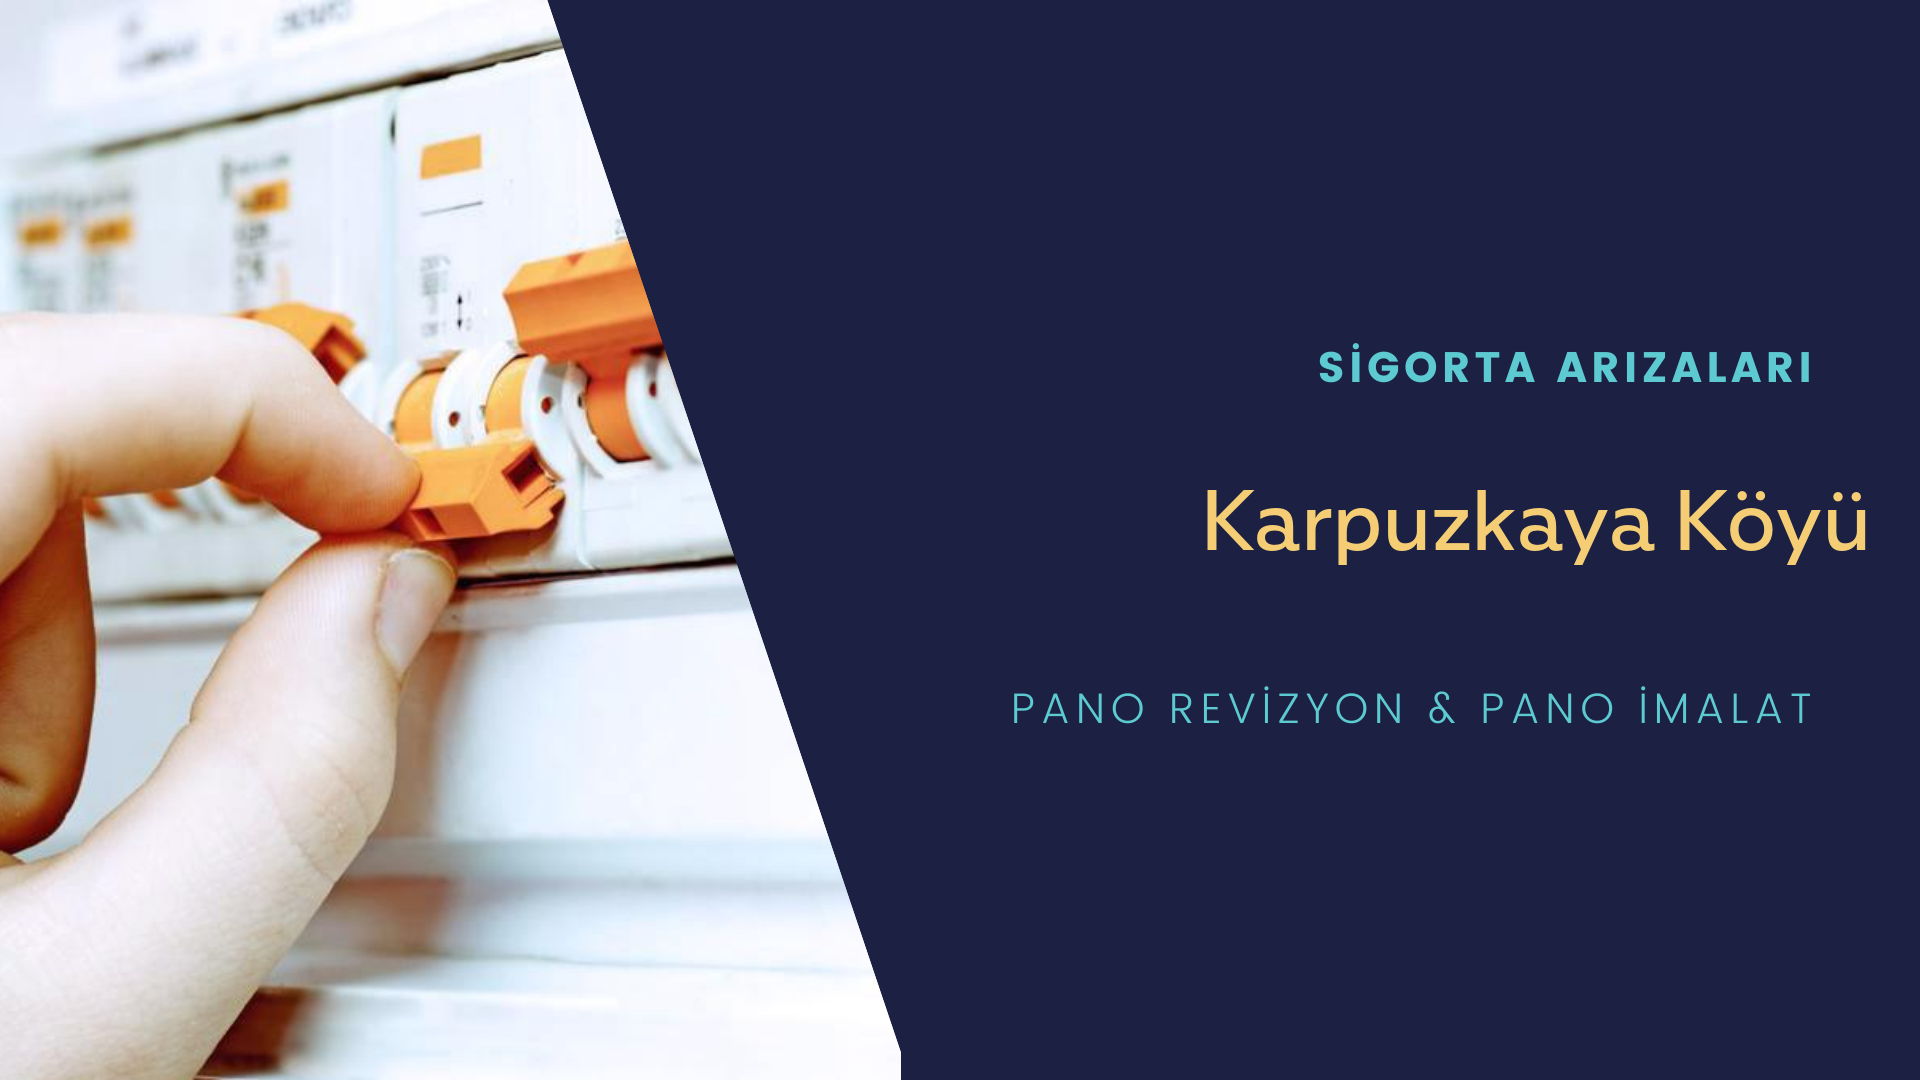 Karpuzkaya Köyü Sigorta Arızaları İçin Profesyonel Elektrikçi ustalarımızı dilediğiniz zaman arayabilir talepte bulunabilirsiniz.